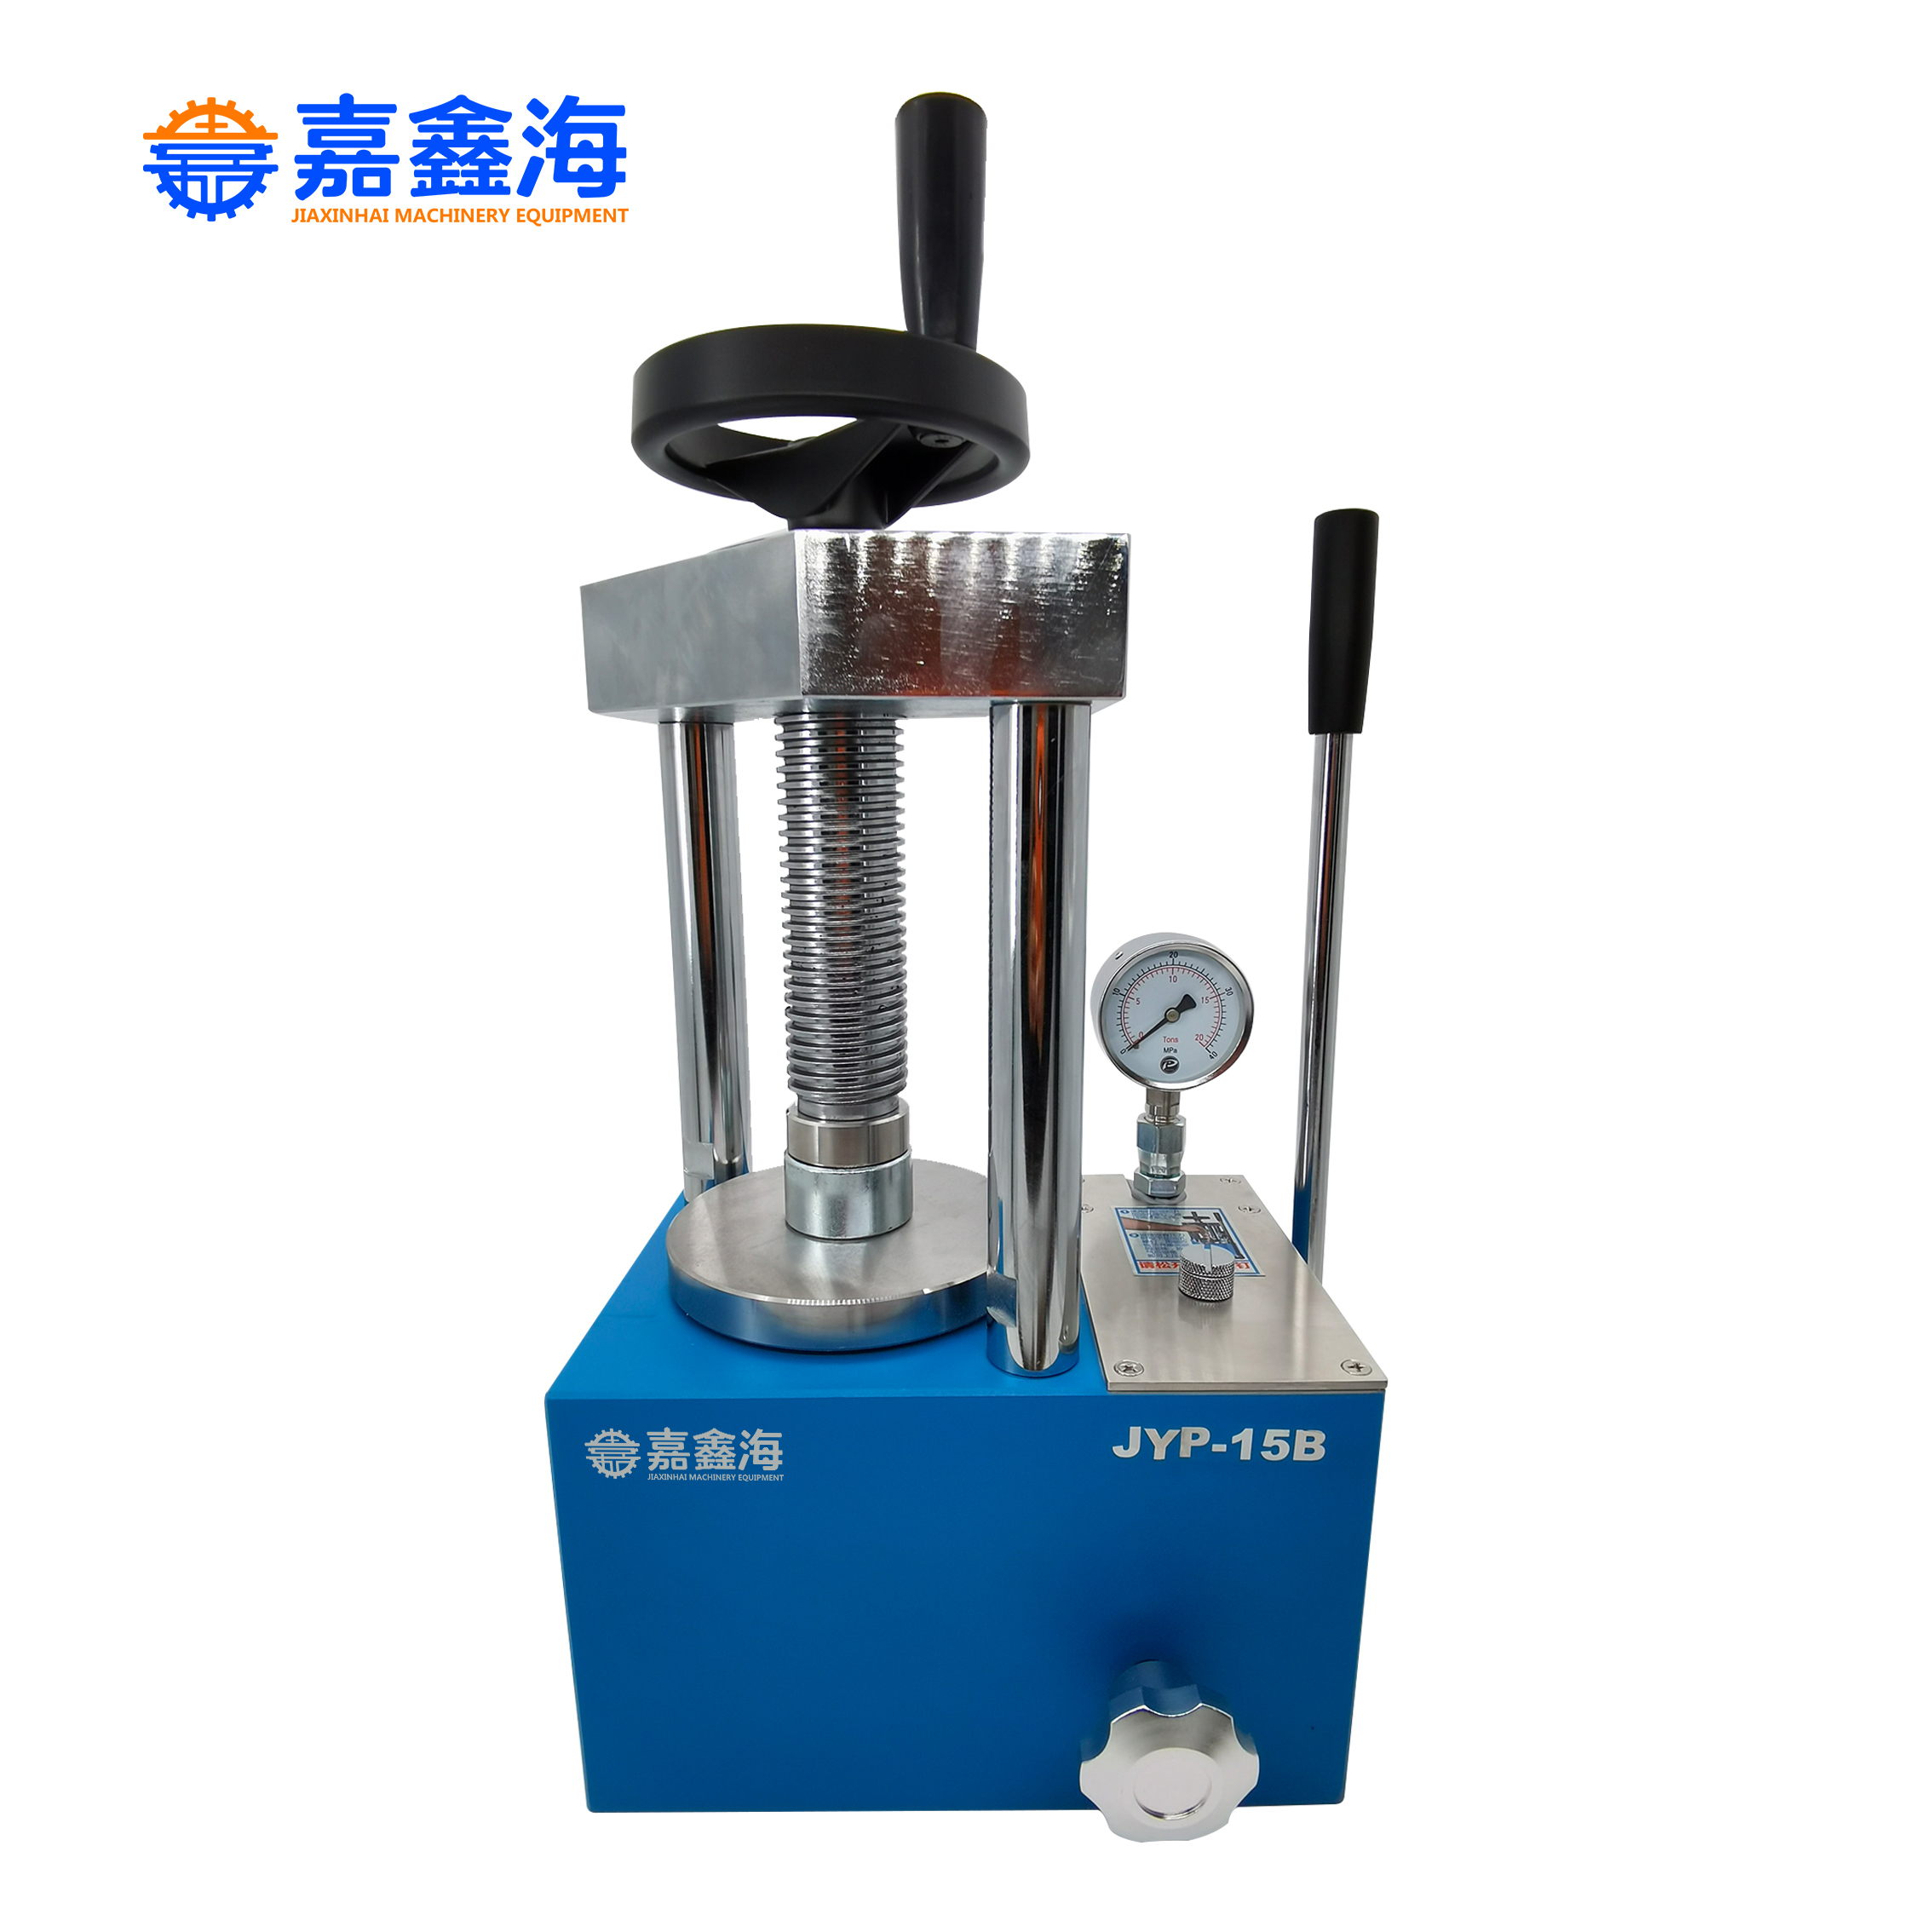 嘉鑫海小型光谱仪压片机广泛应用于新材料、粉末陶瓷等